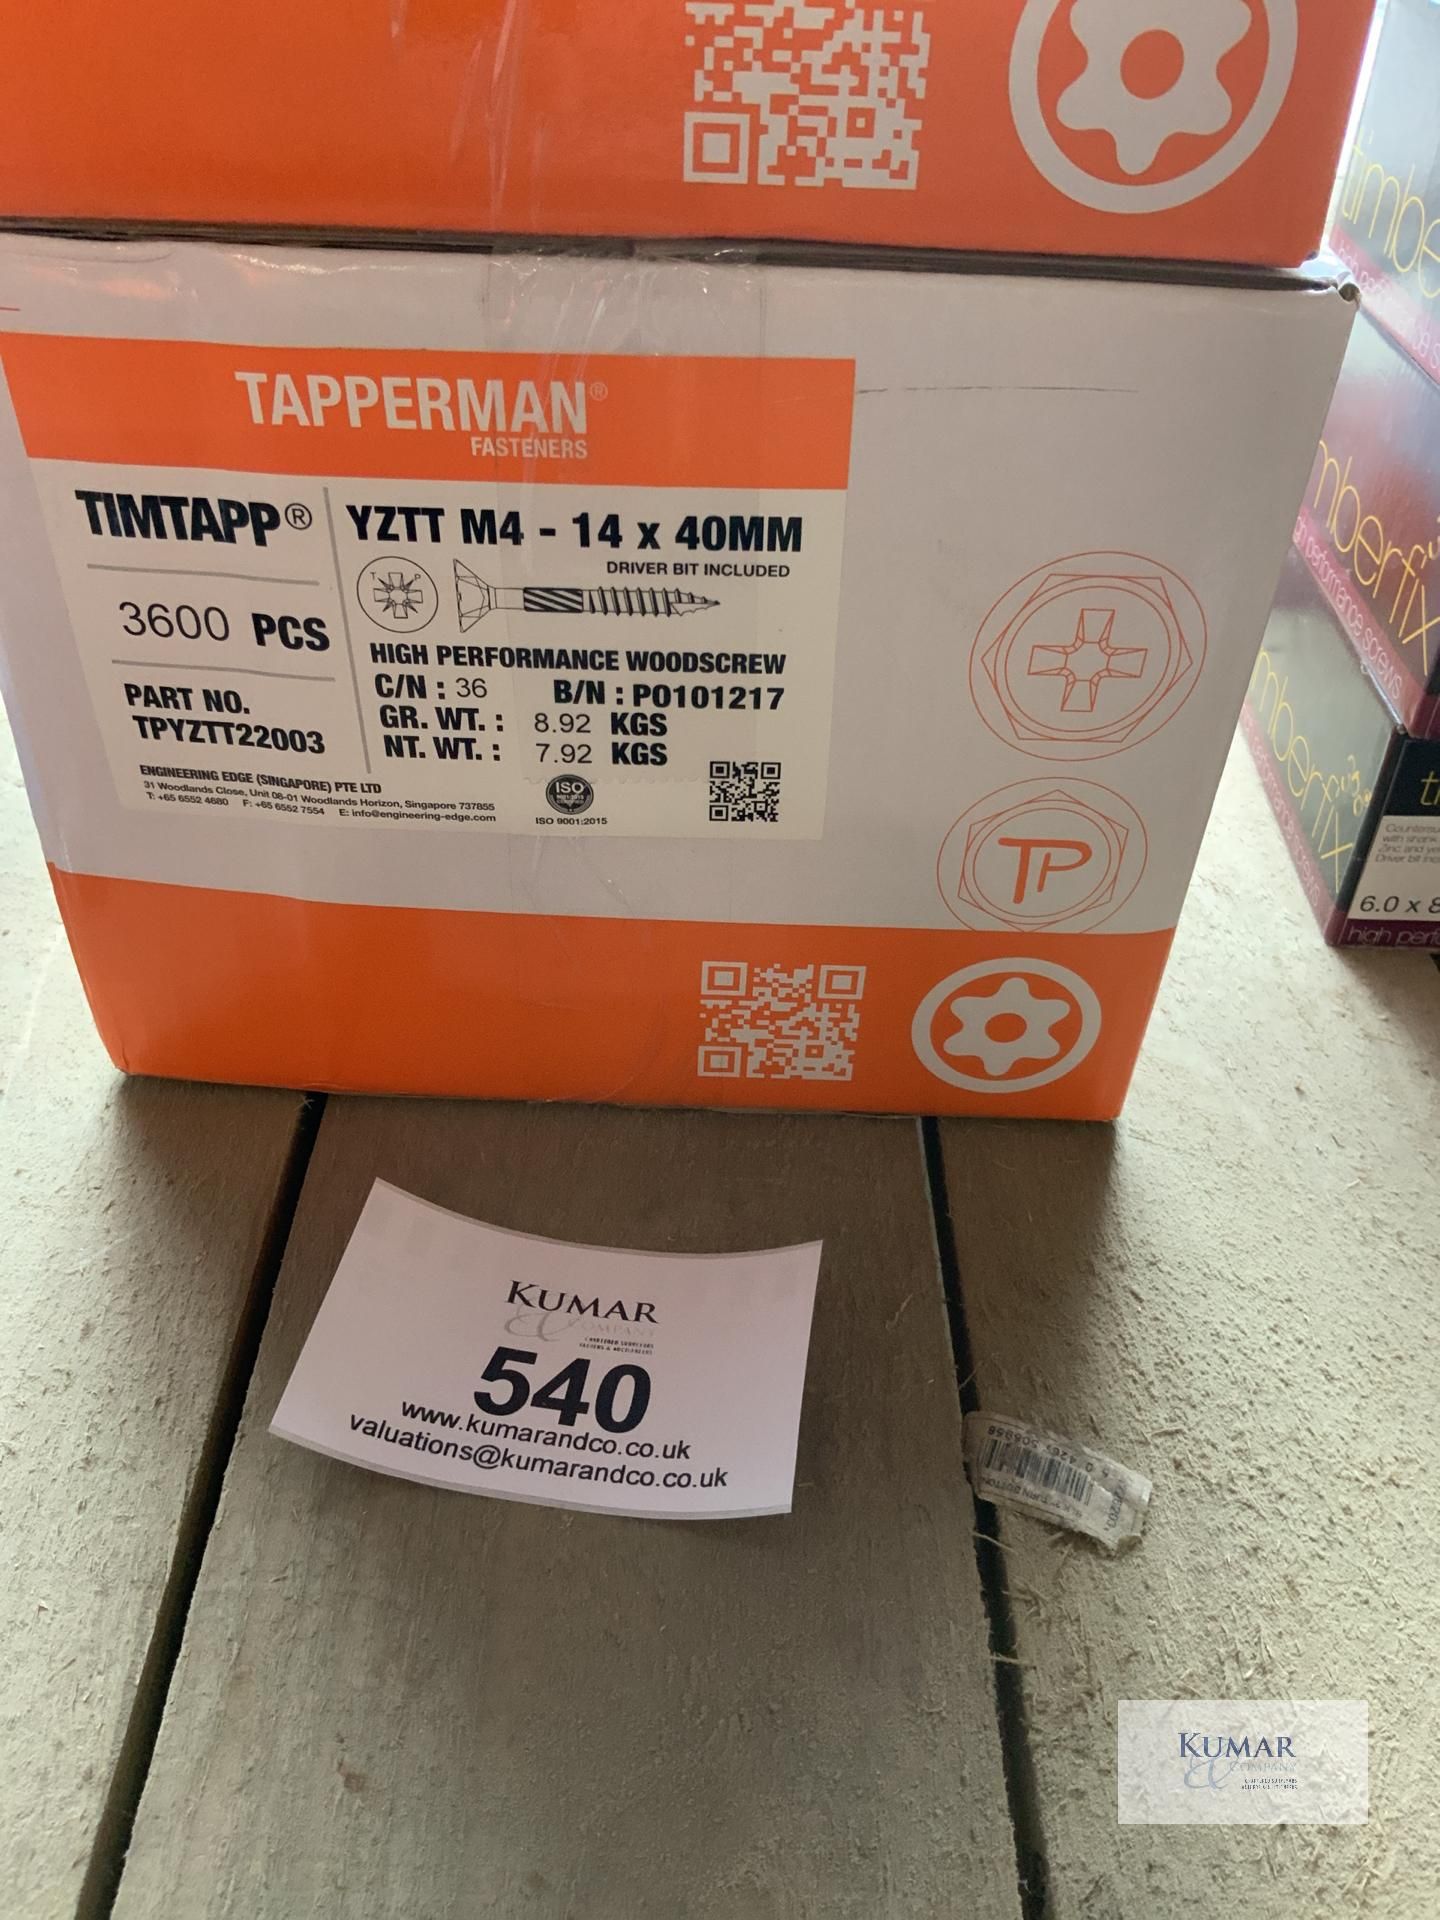 Box of M4 14x 40 Tapperman Wood Screws